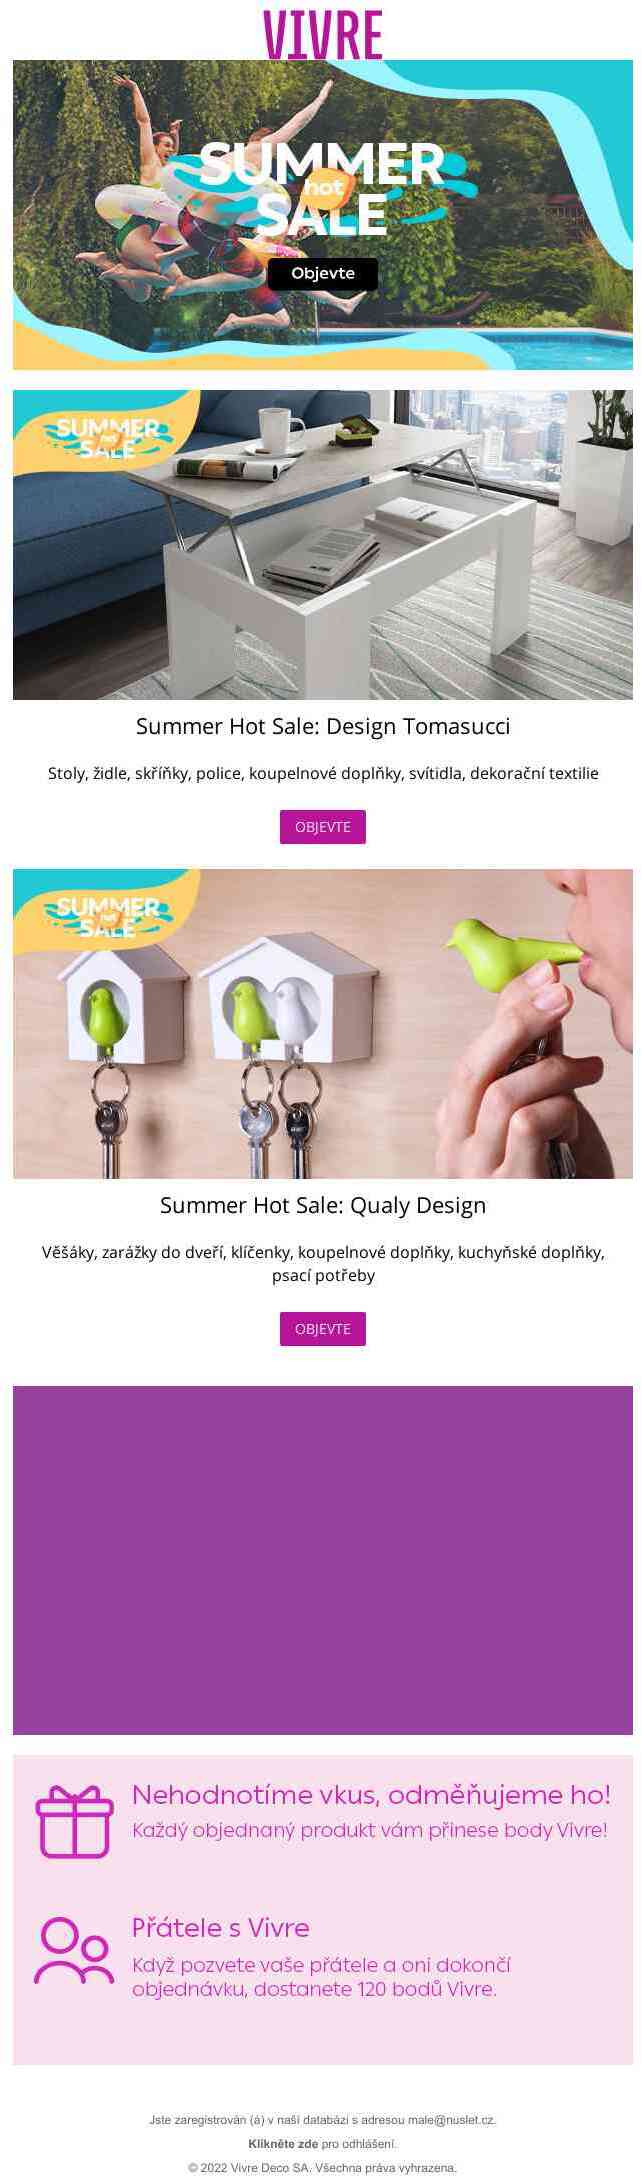 Ve Vivru je Summer Hot Sale! Objevte kolekce Design Tomasucci a Qualy
 Design.